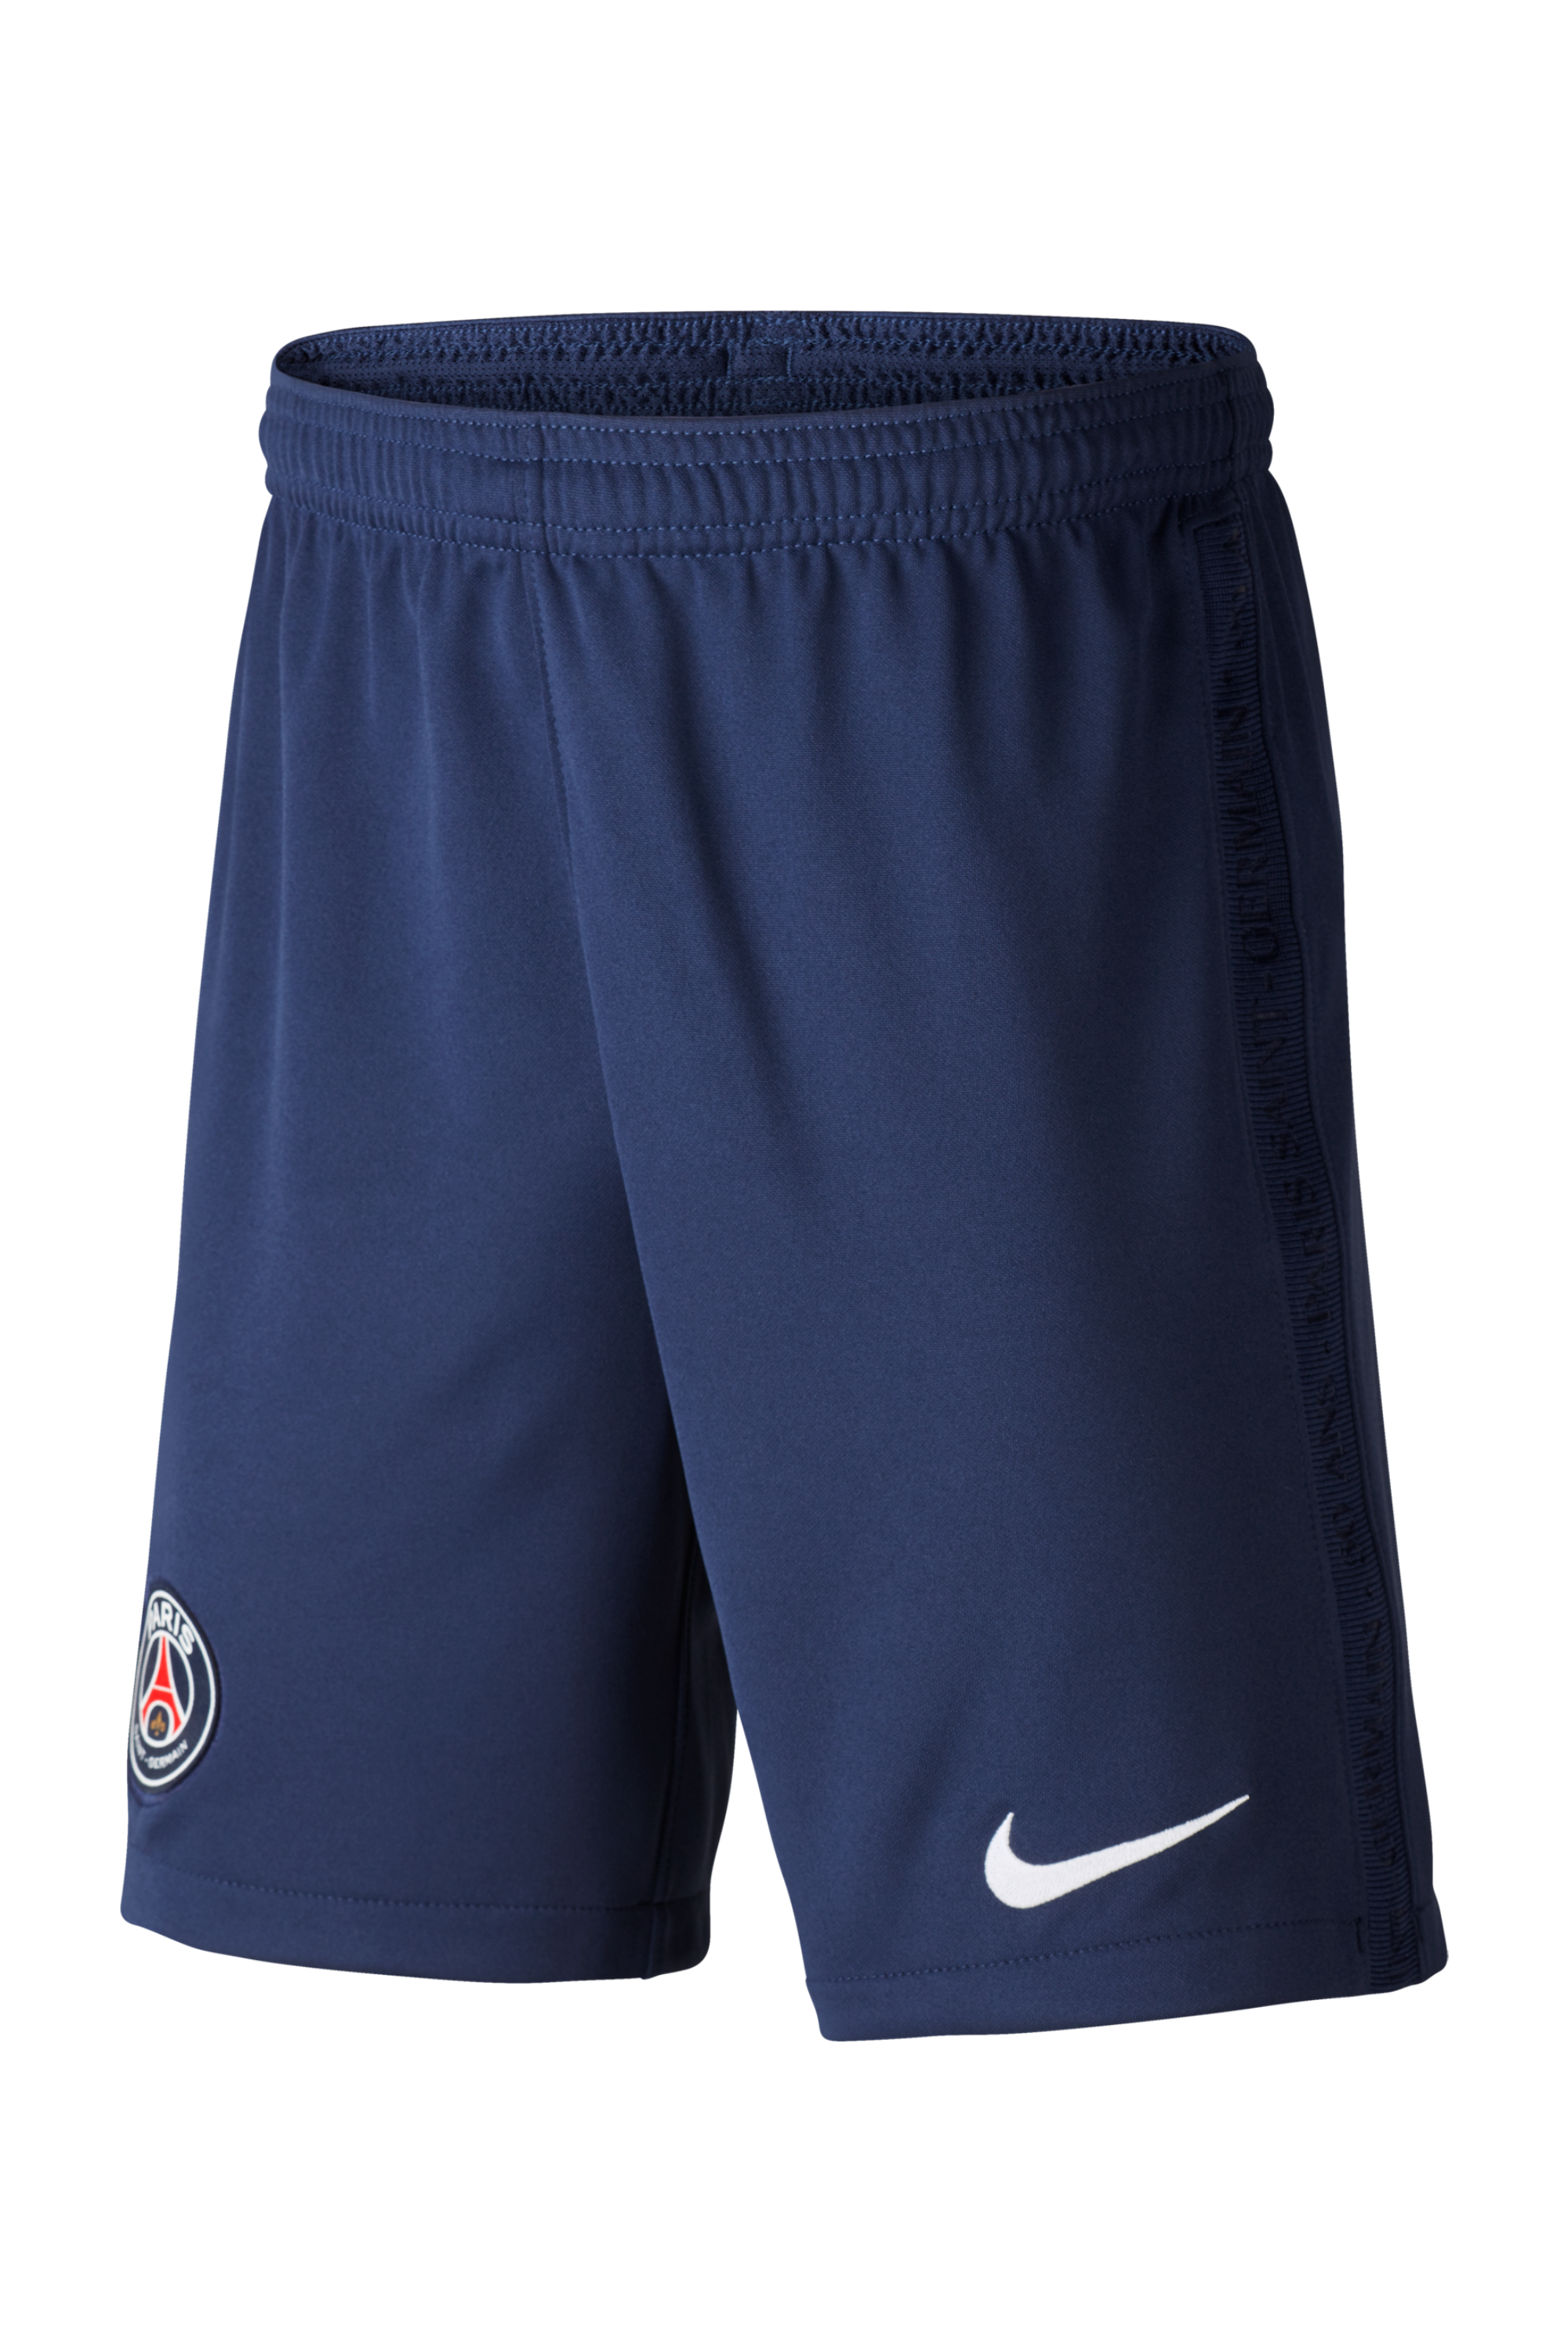 Shorts Nike PSG Breathe Stadium 2020/21 